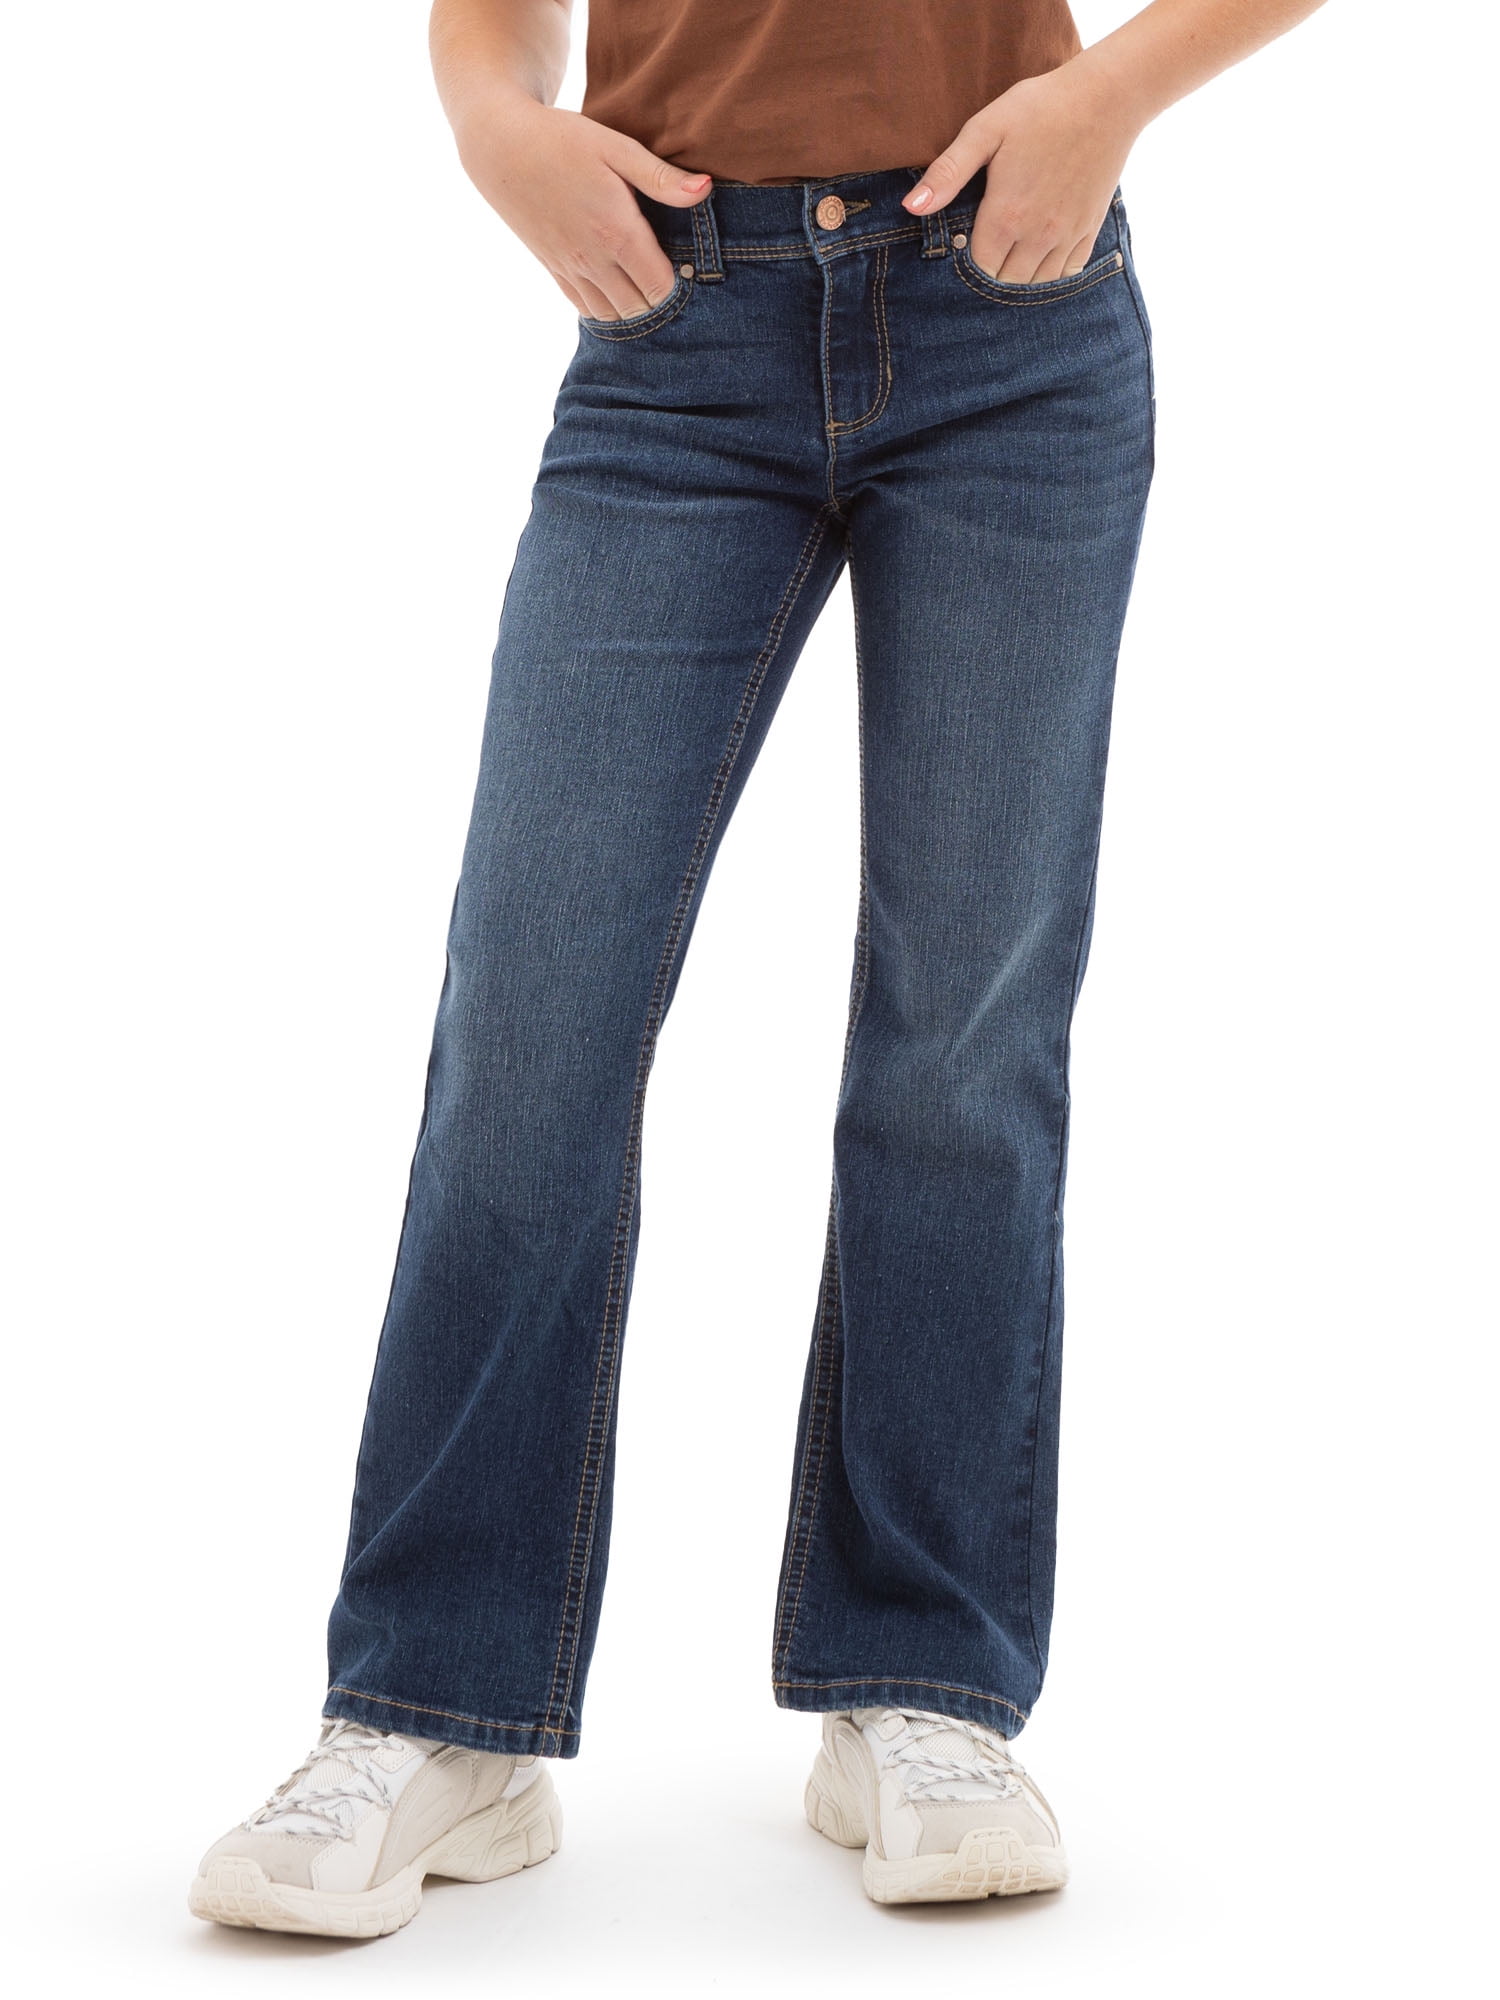 Jordache Girls Bootcut Jeans, Sizes 5-18 & Plus 